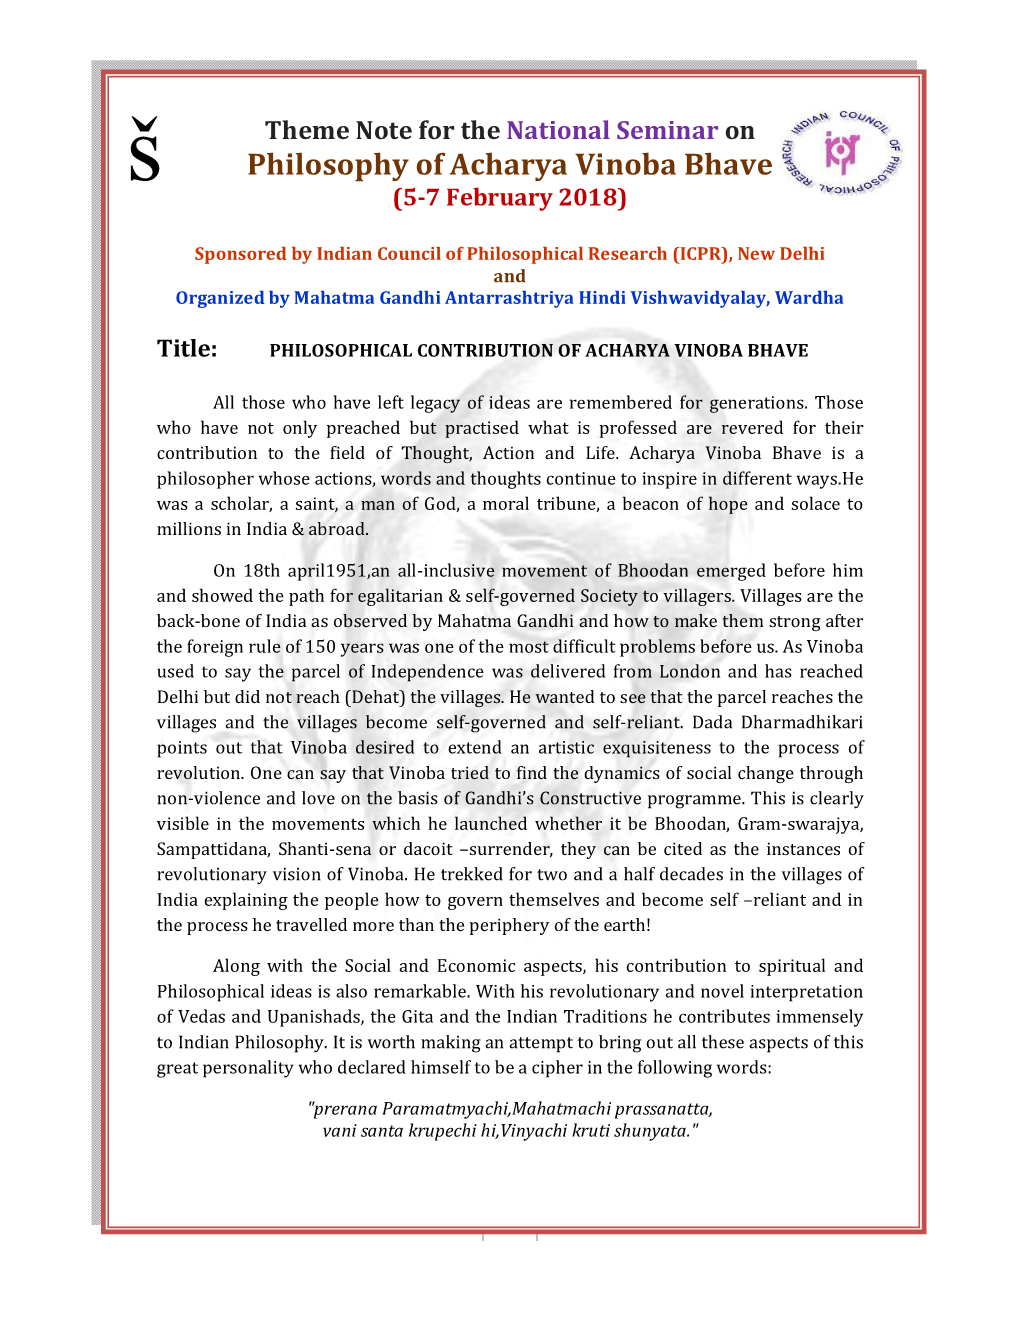 Philosophy of Acharya Vinoba Bhave (5-7 February 2018)